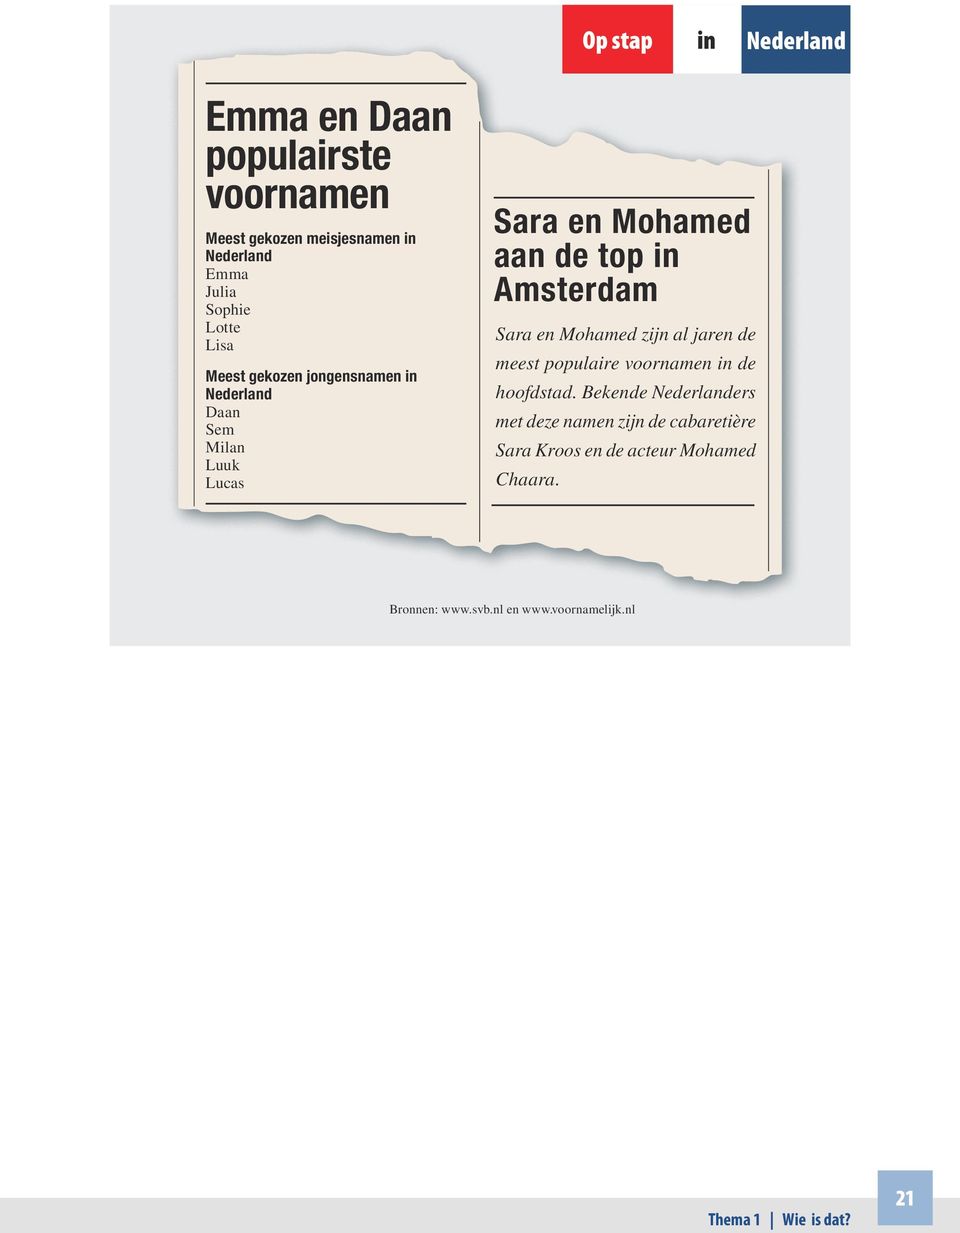 in Amsterdam Sara en Mohamed zijn al jaren de meest populaire voornamen in de hoofdstad.